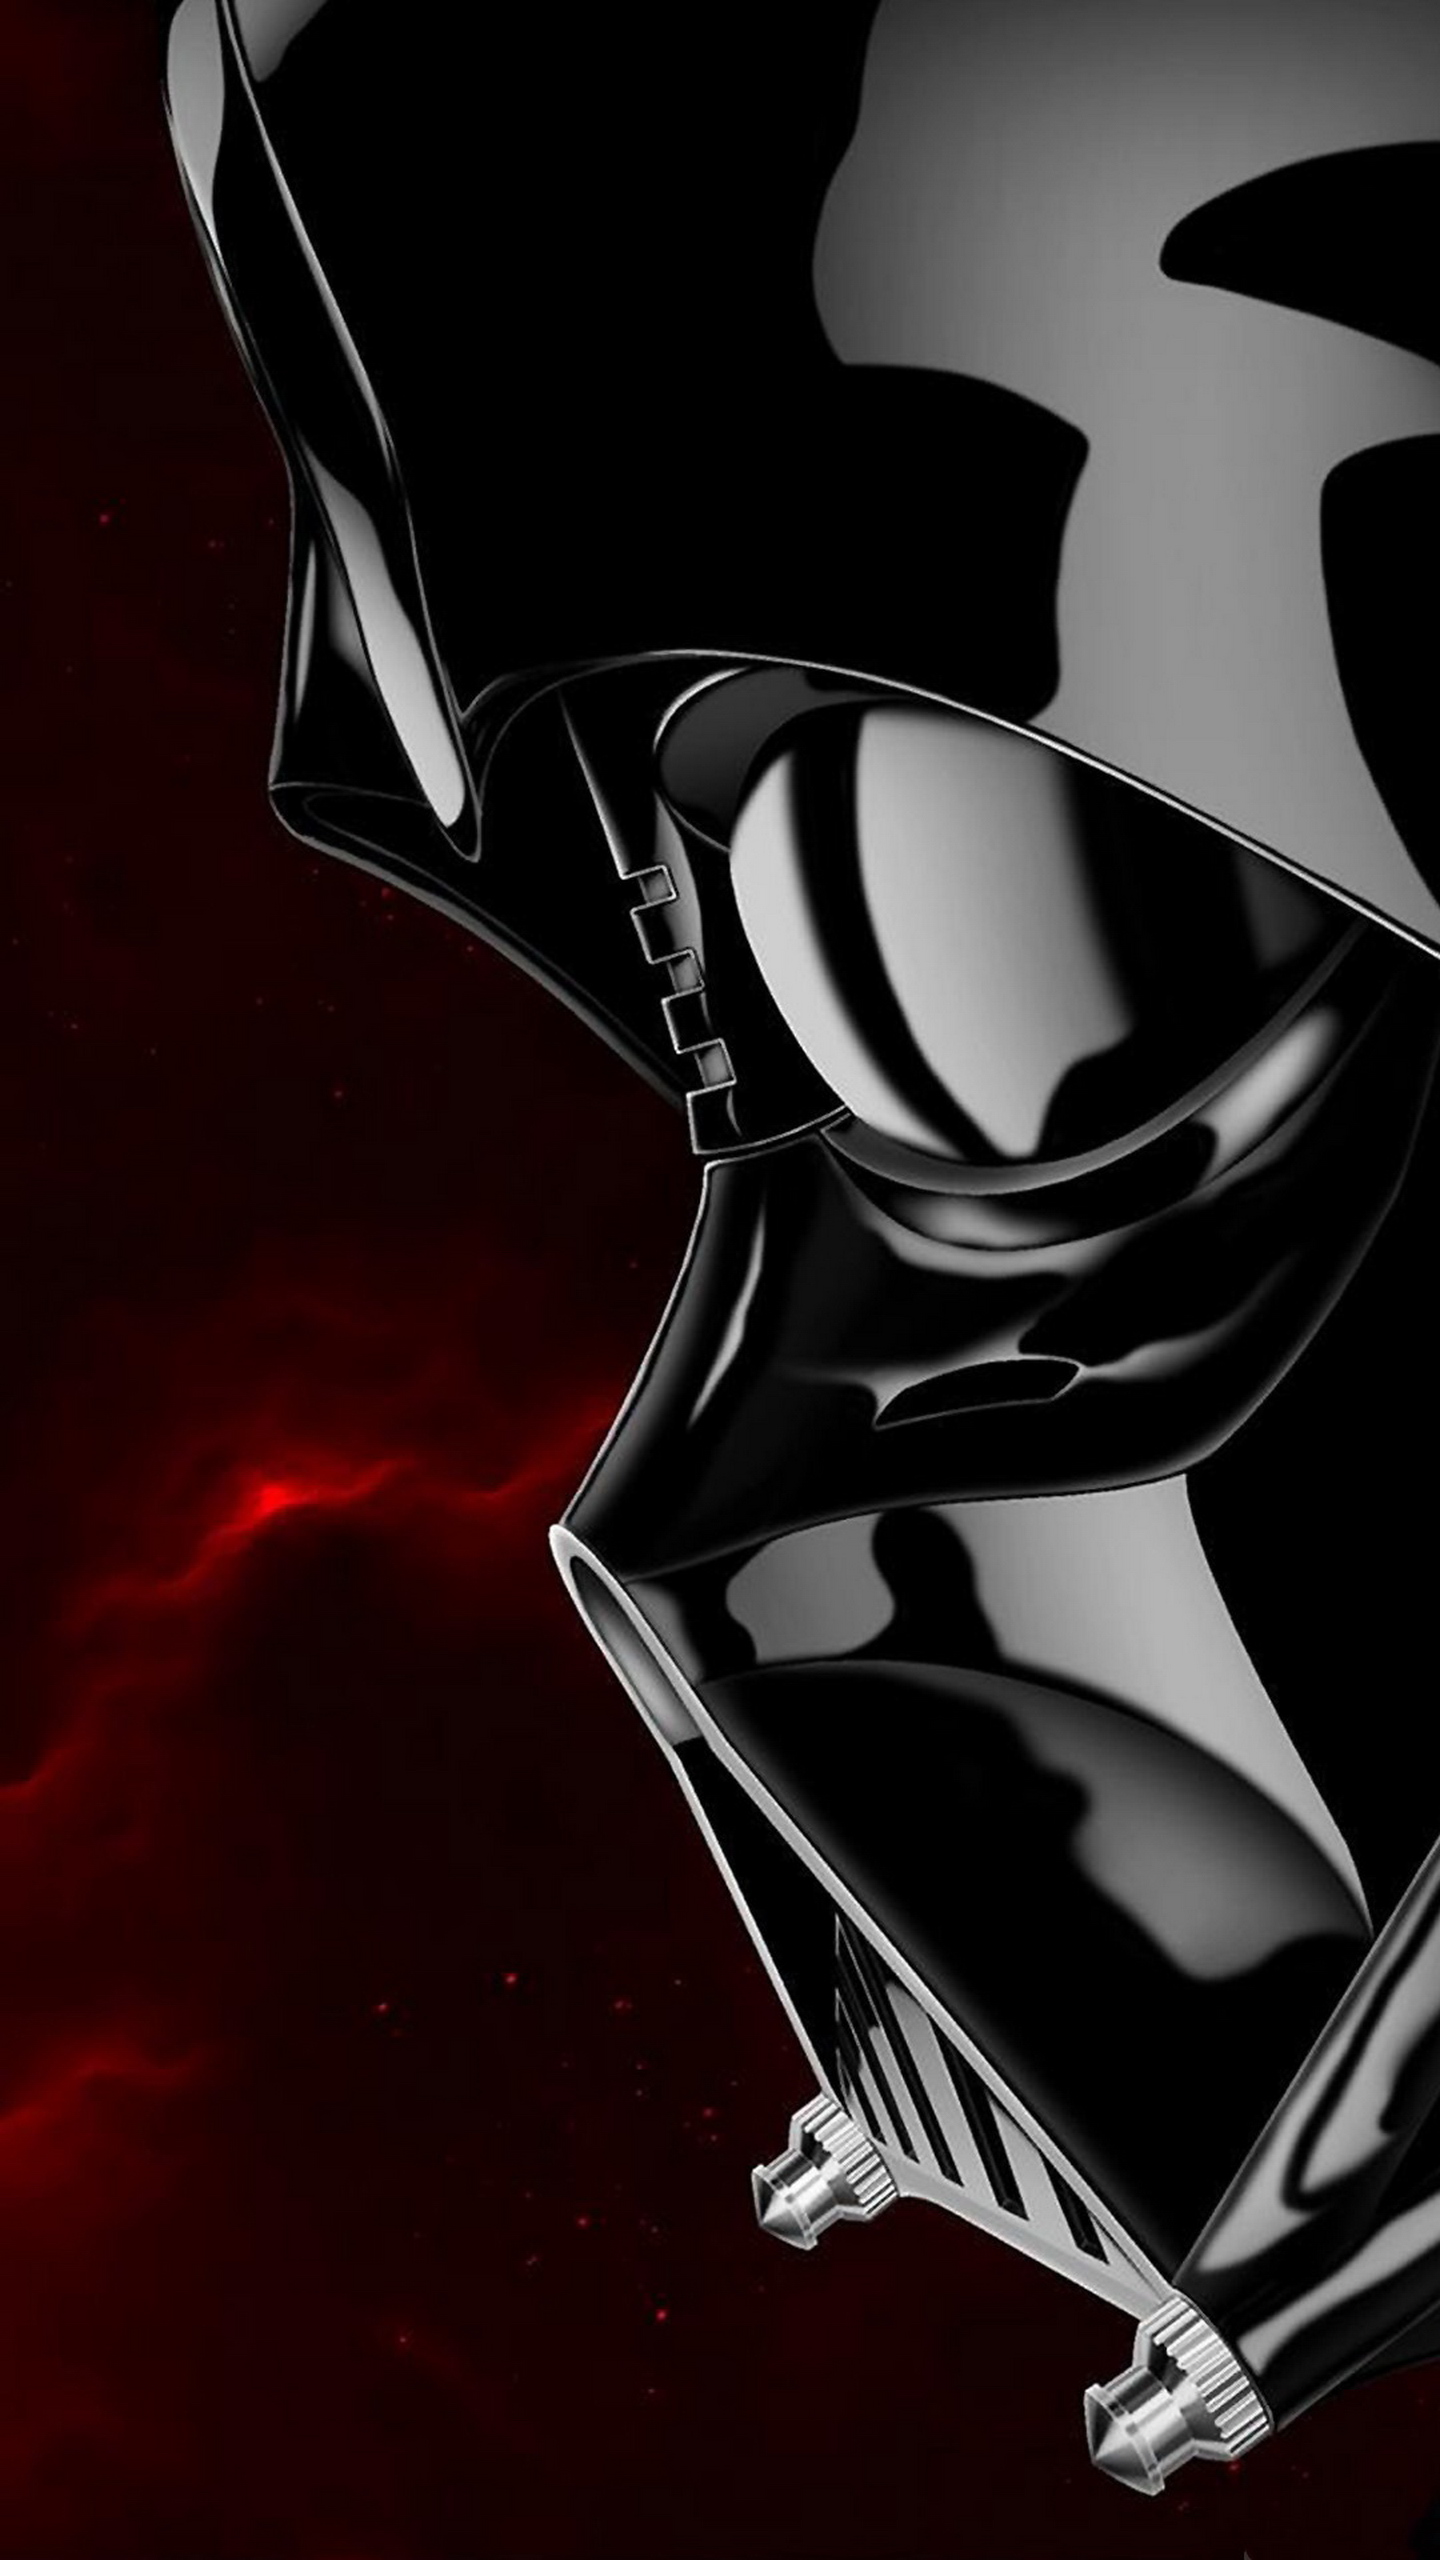 Darth Vader Star Wars Illustration Lock Screen Samsung